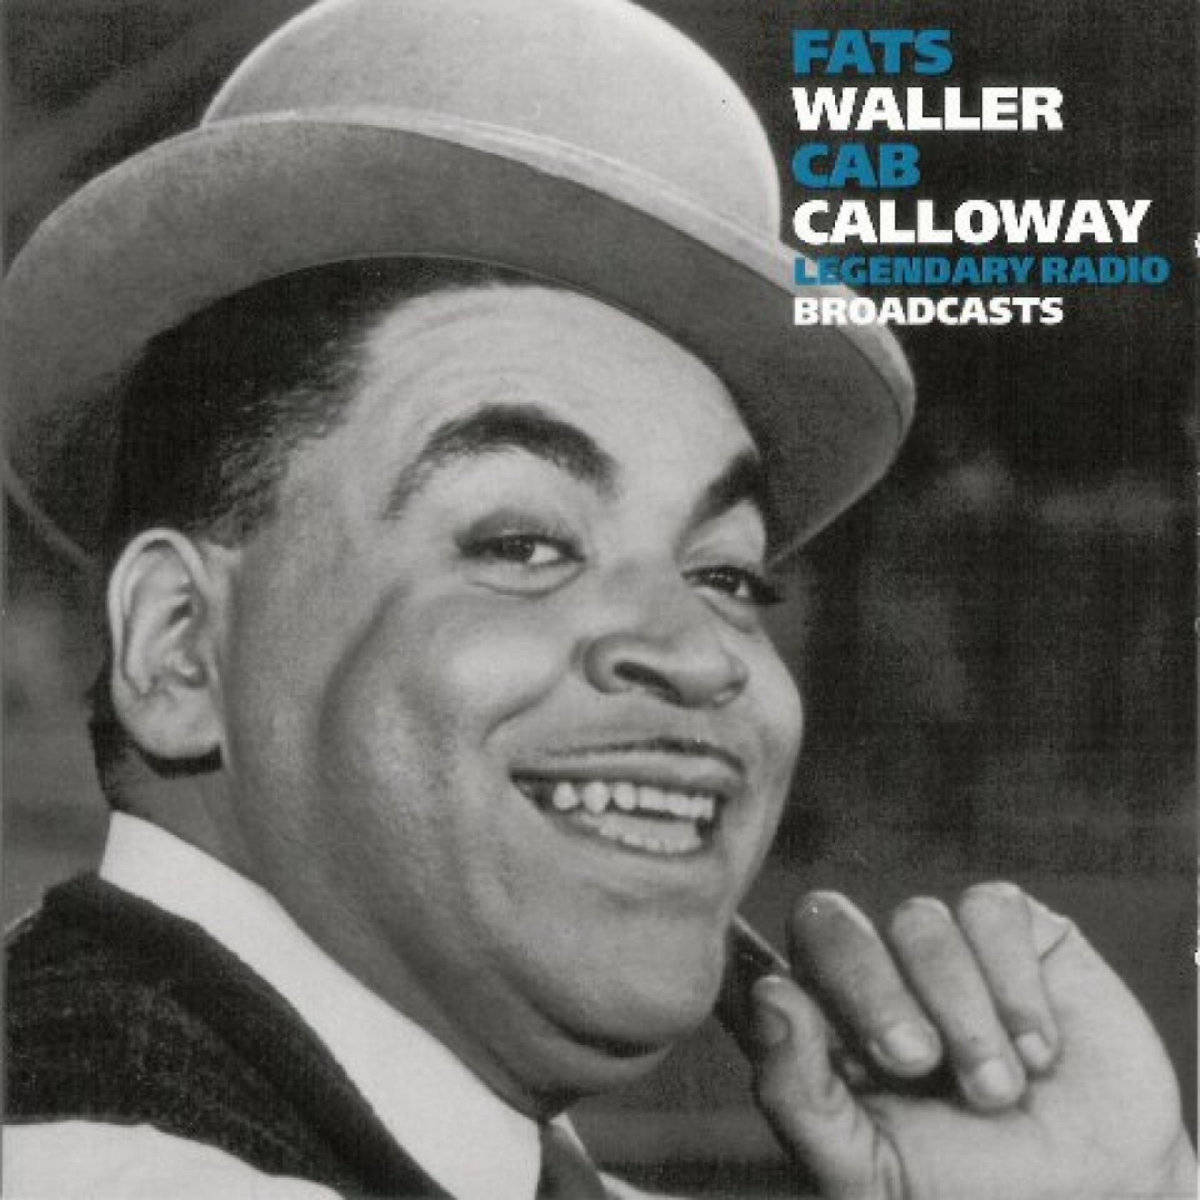 Fats Waller Cab Calloway legendariske radioudsendelser 2008. Wallpaper